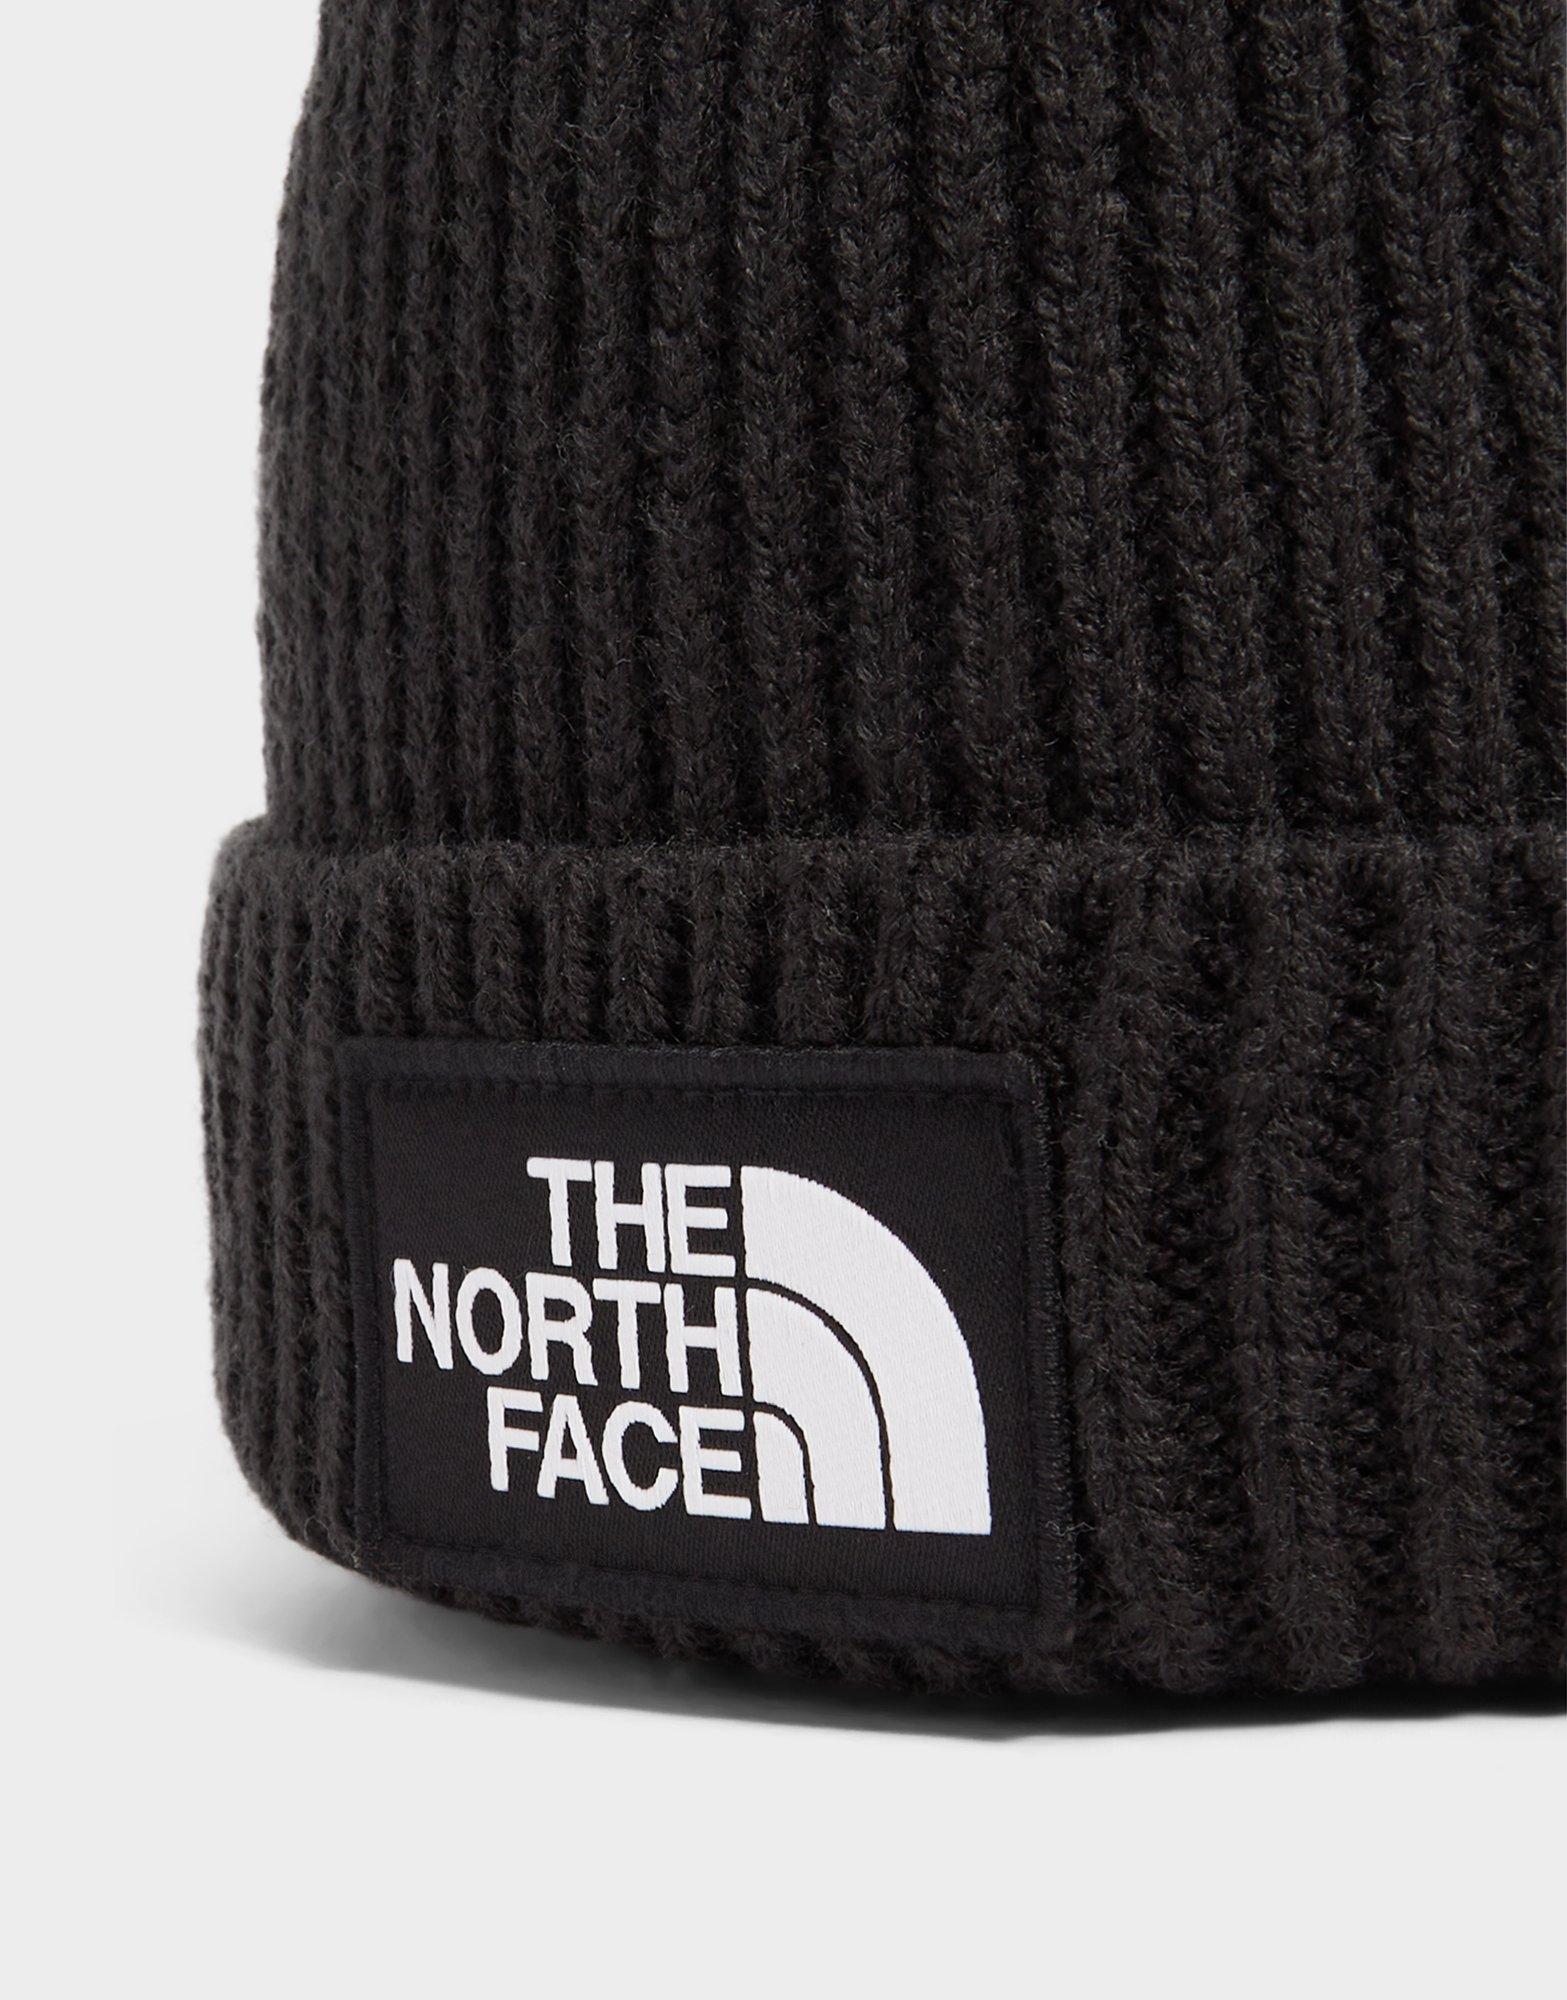 The North Face - Bonnet à revers avec logo encadré - Noir